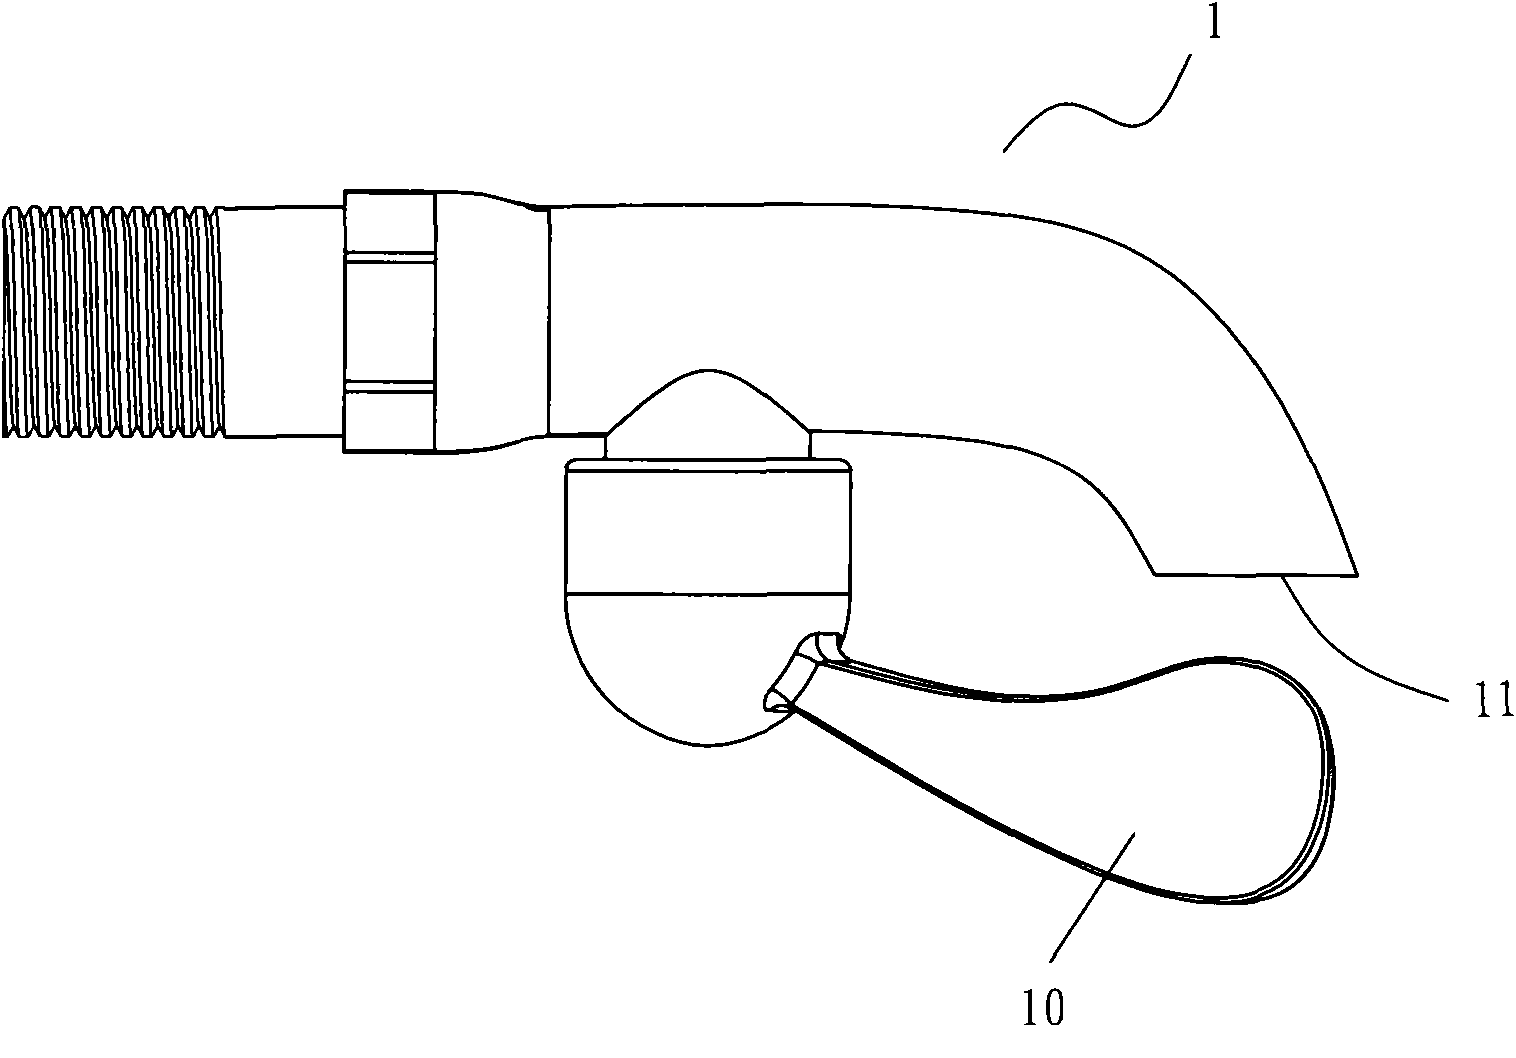 Faucet handle structure